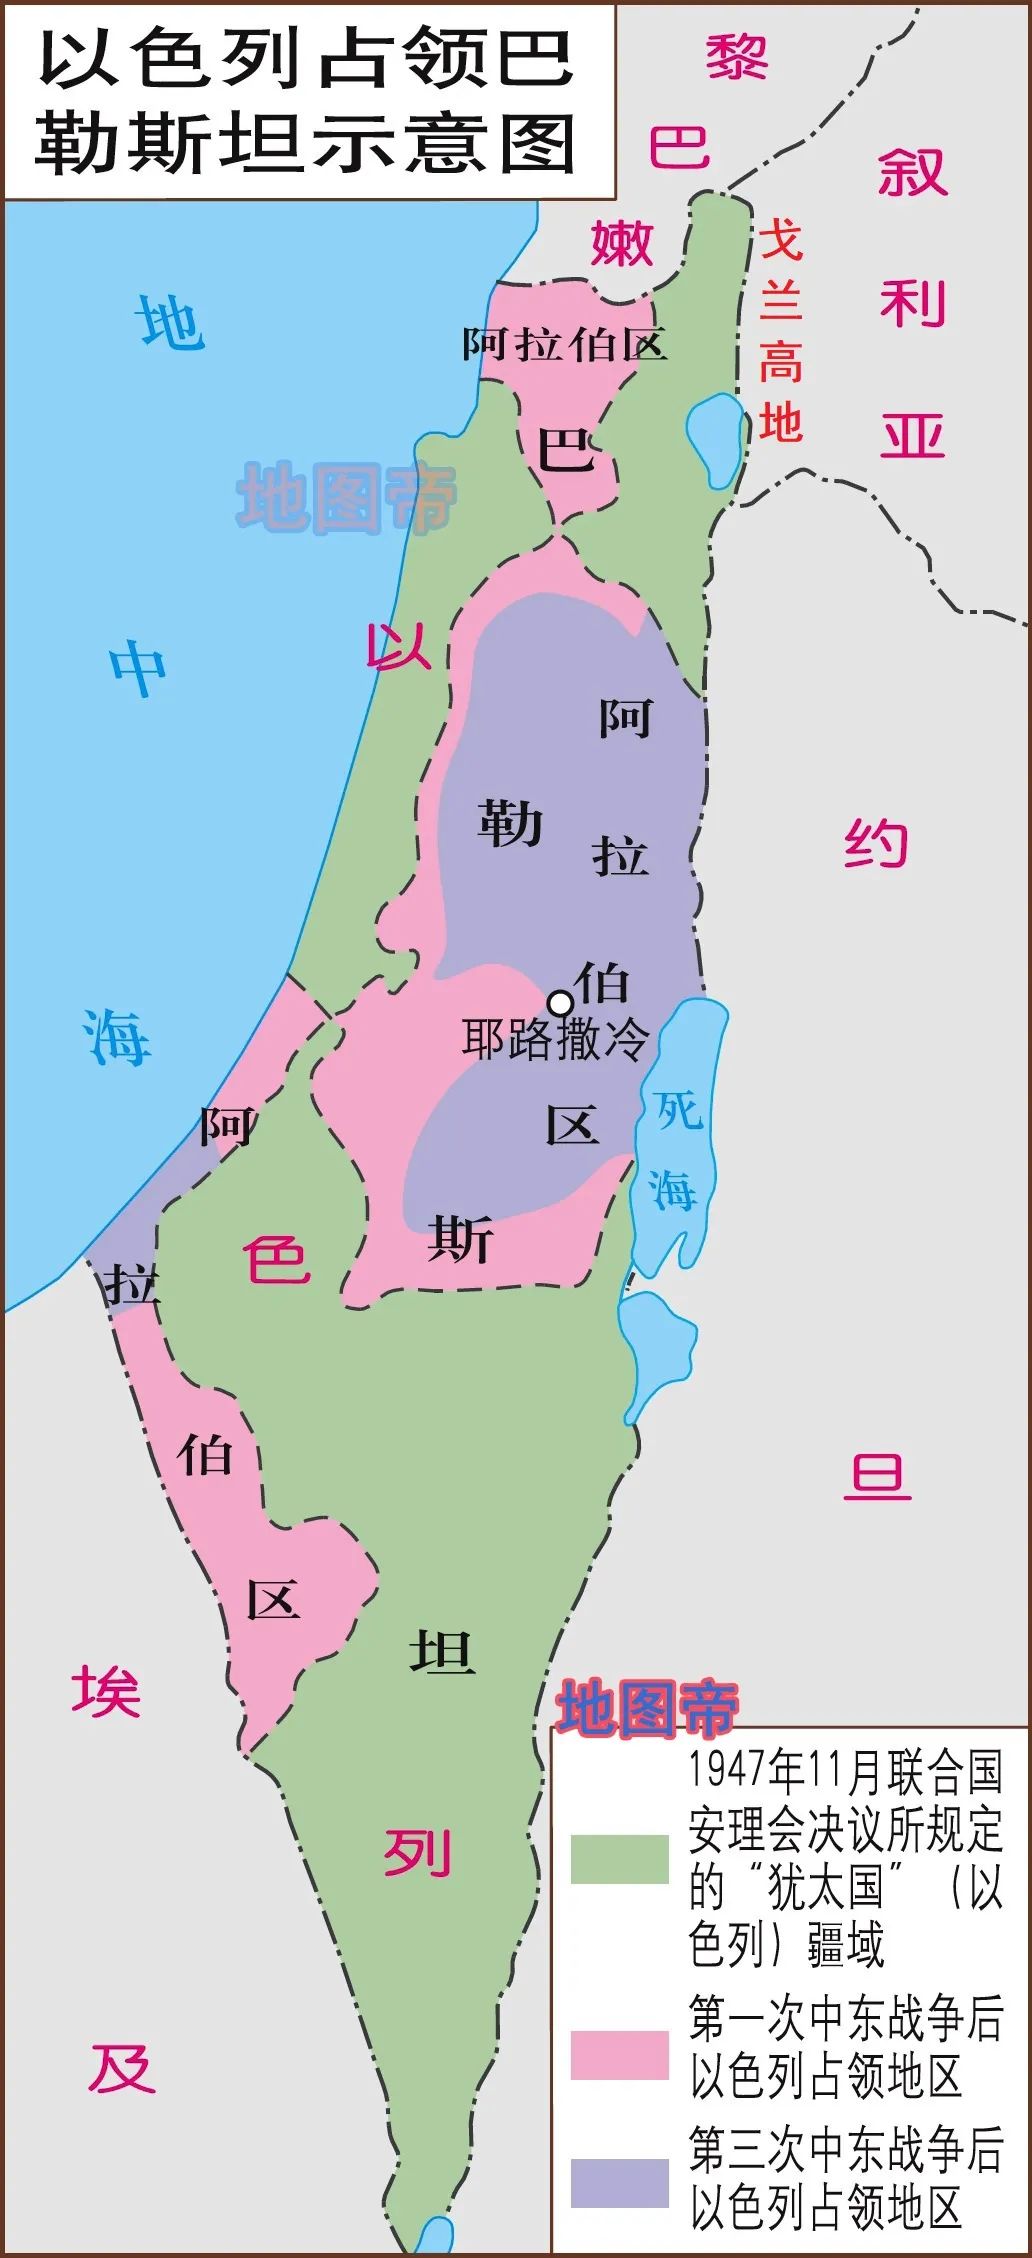 1947年,联合国关于巴勒斯坦分治决议规定,以色列国的面积为1.